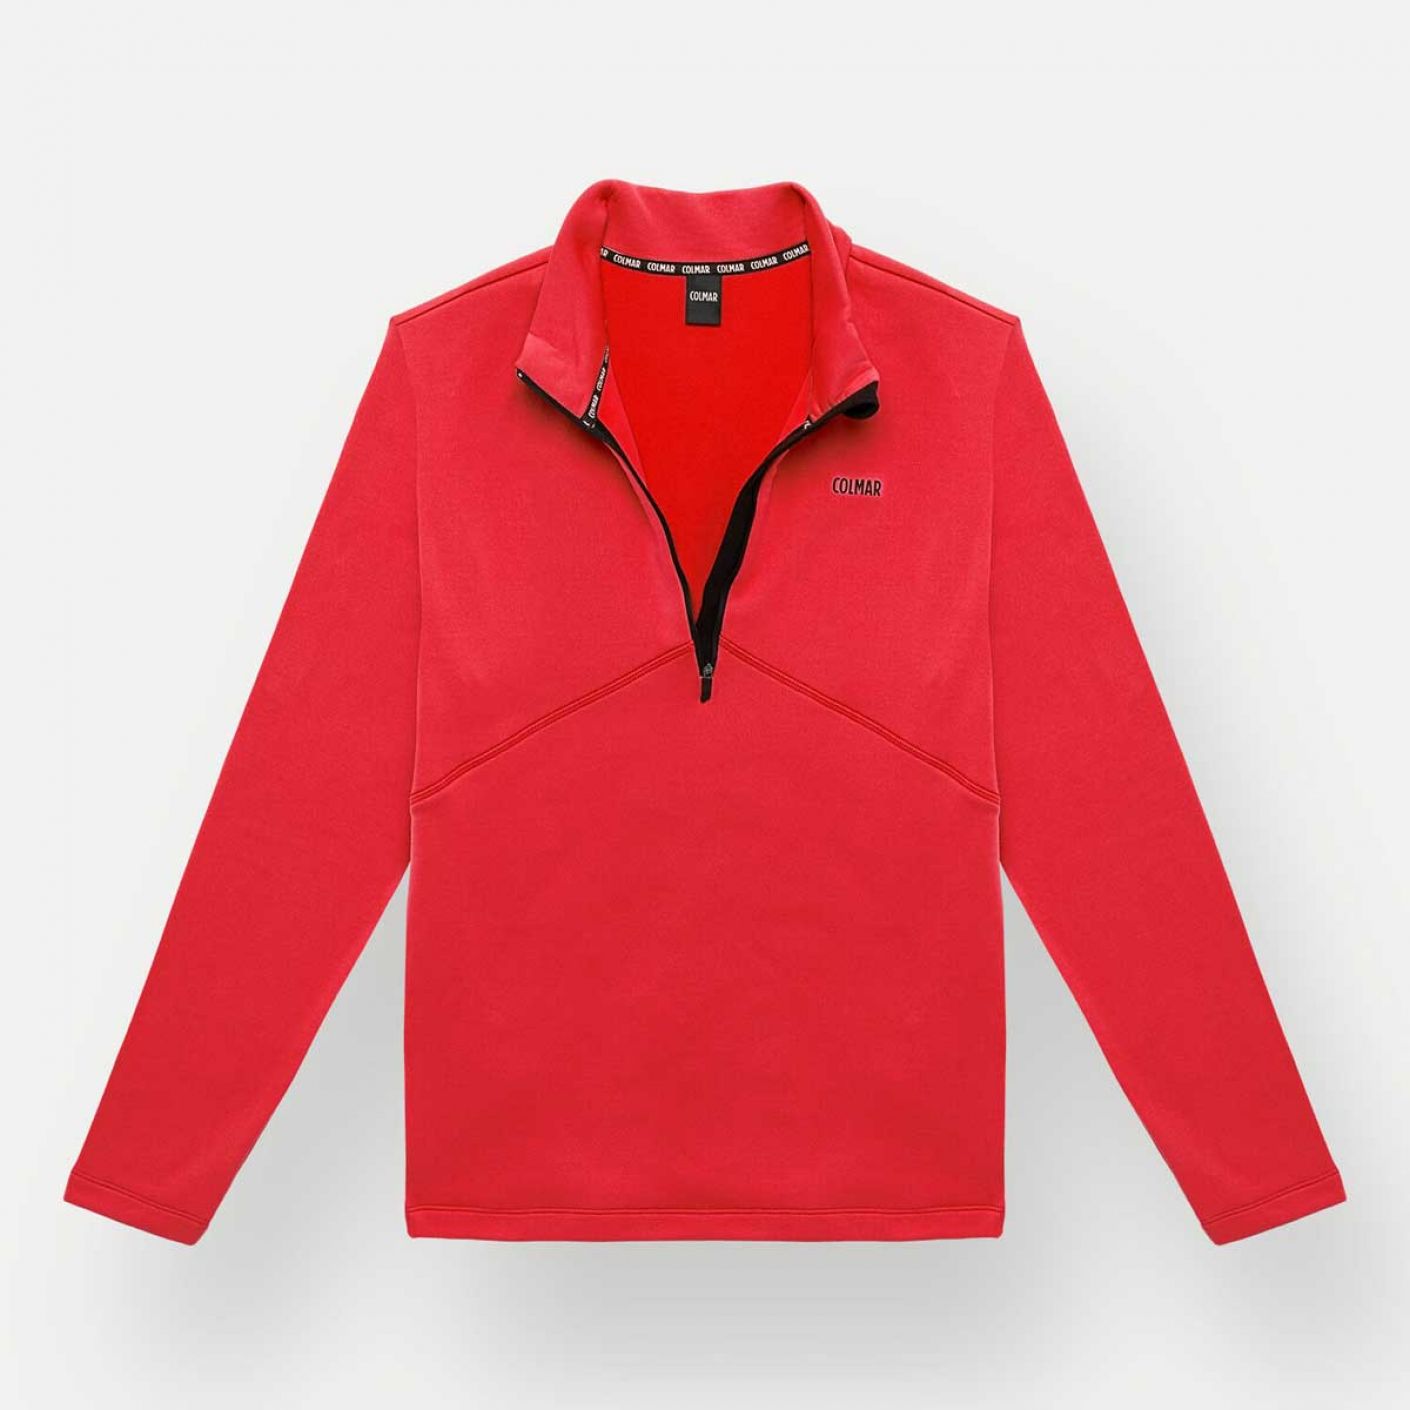 Colmar Men's Ski Sweatshirt with Red Zip